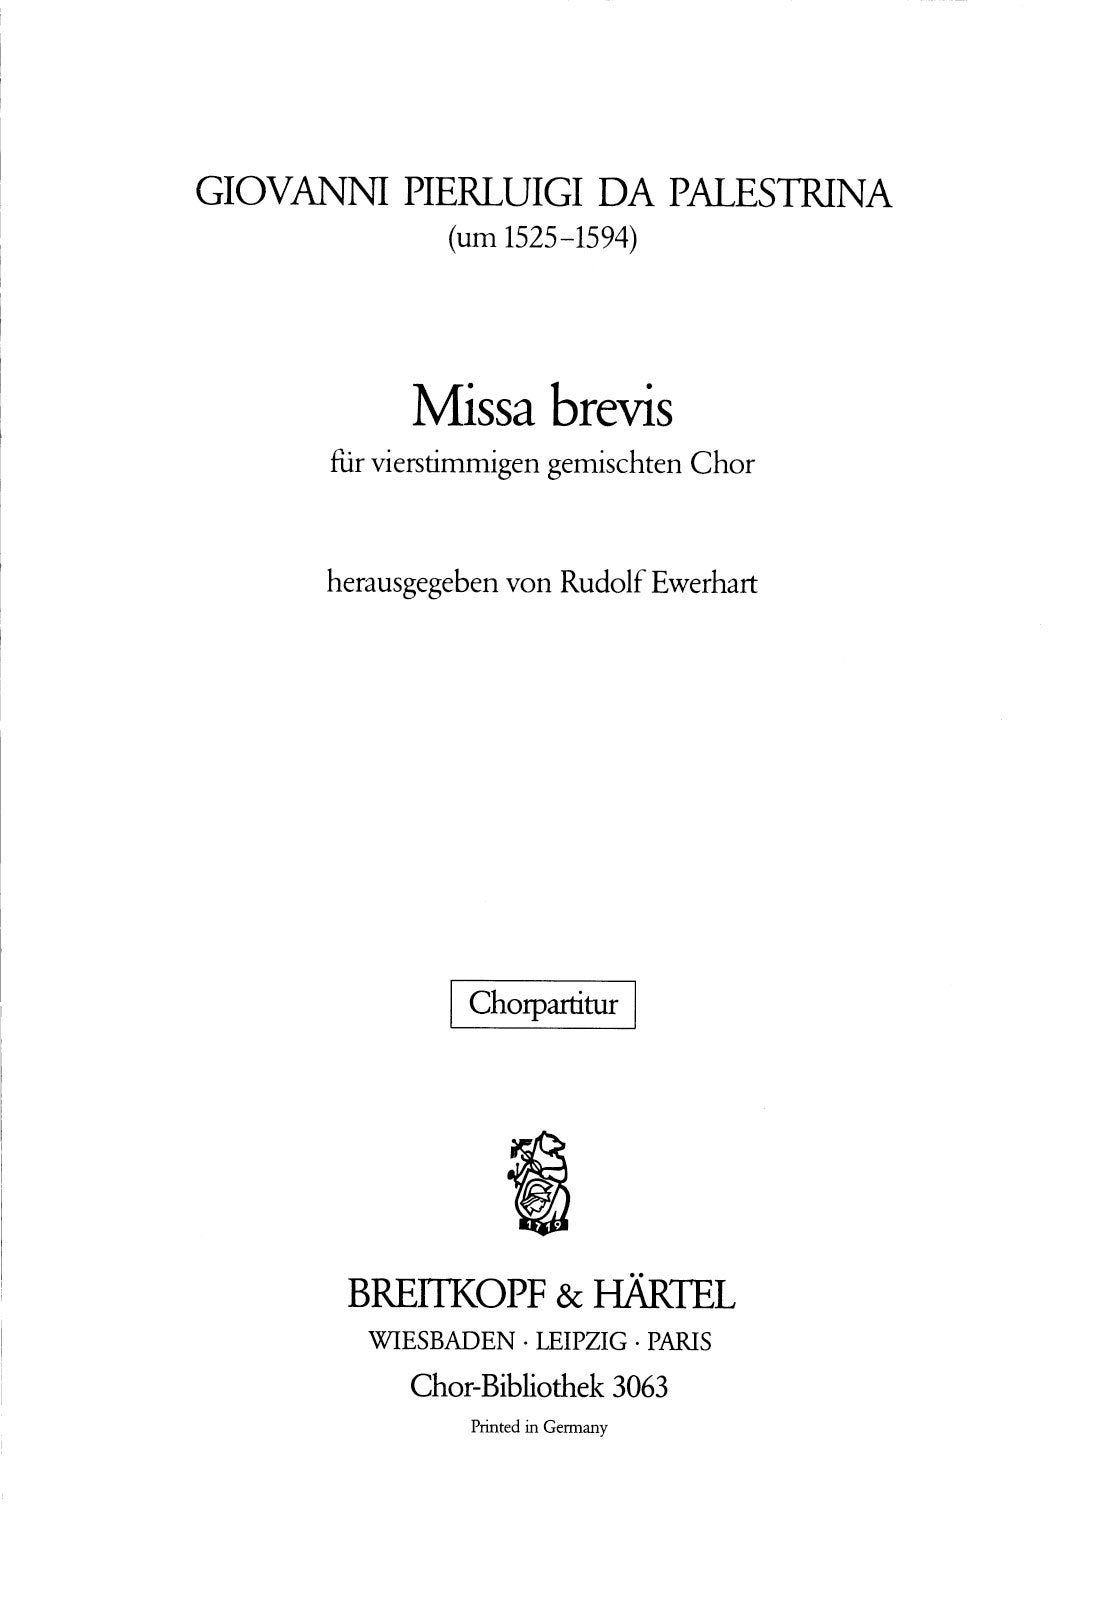 Palestrina: Missa brevis